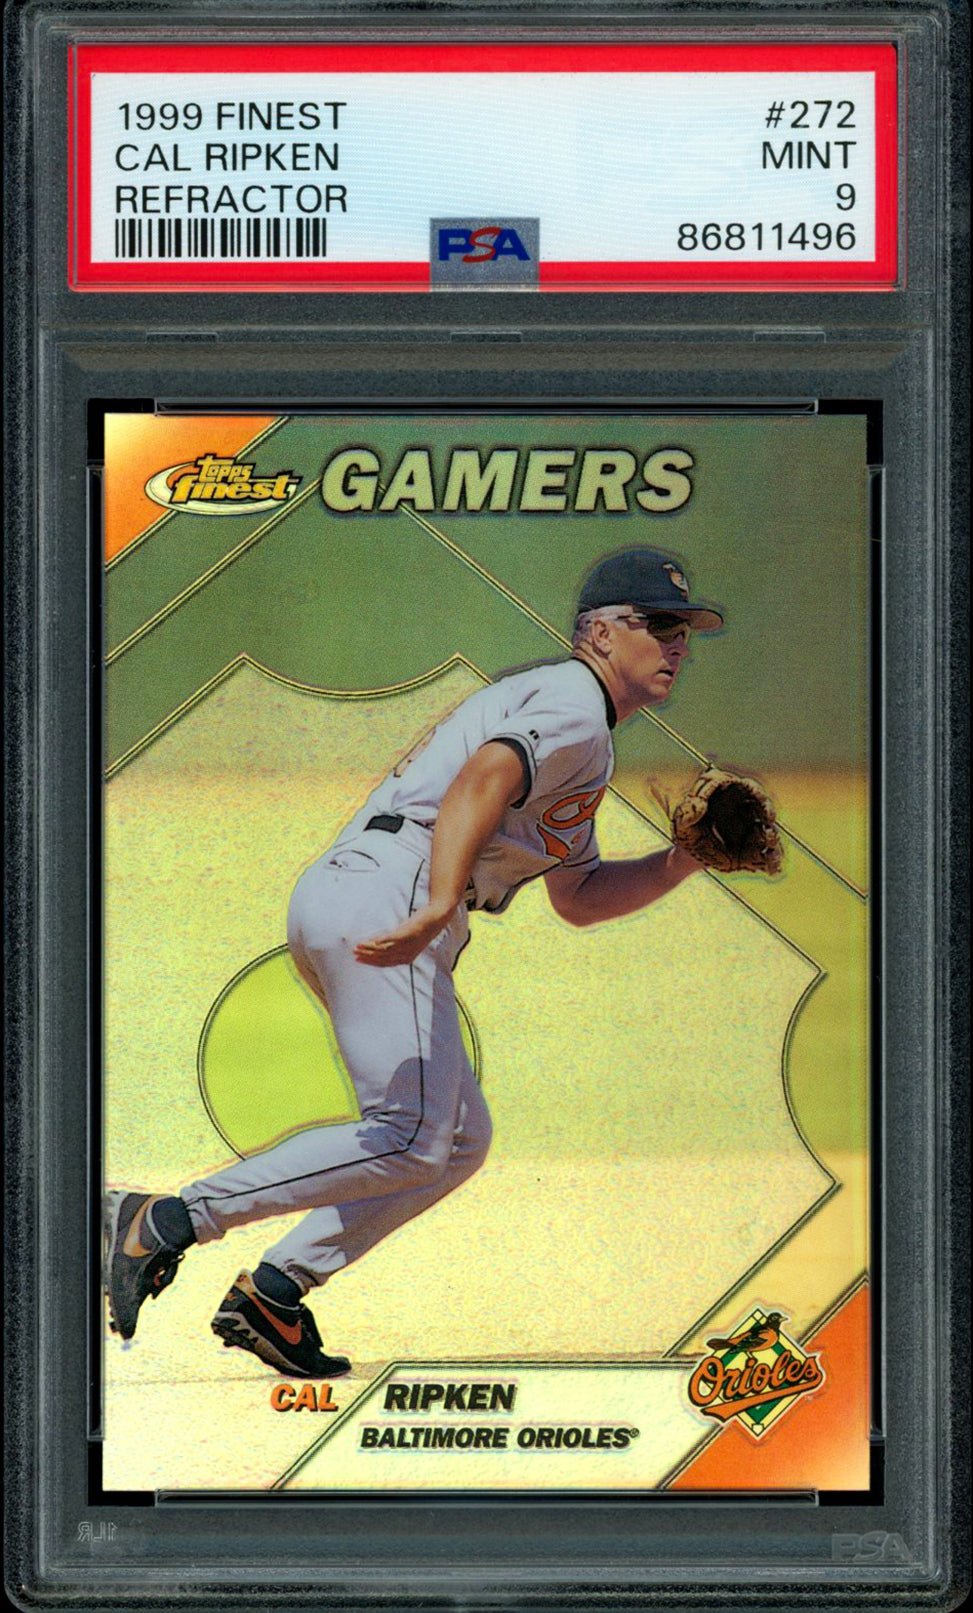 CAL RIPKEN JR PSA 9 1999 Finest Gamers SP Refractor #272 Baseball Graded Cards Parallel Short Print - Hobby Gems